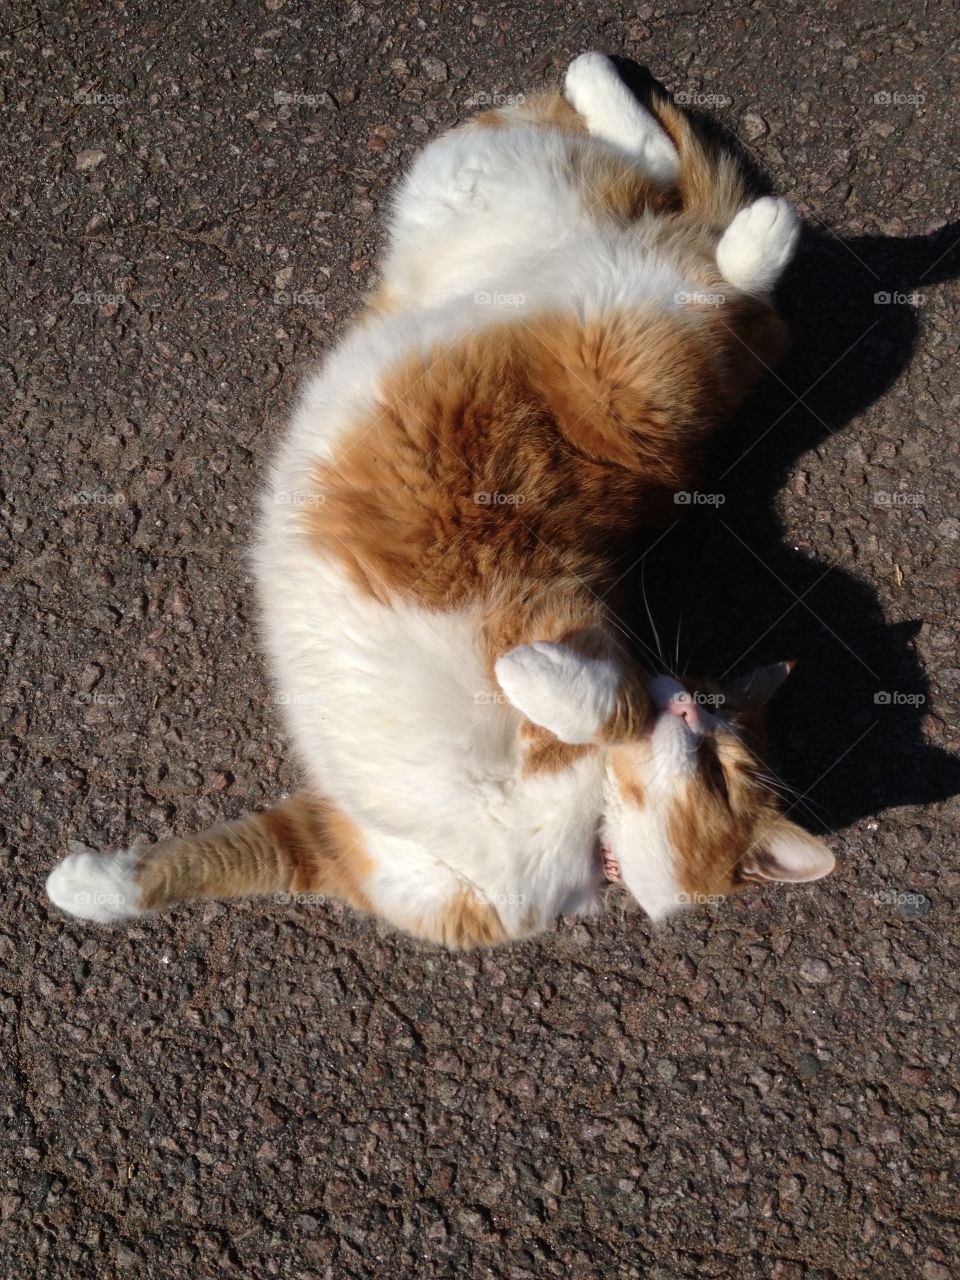 Cat enjoying the sun